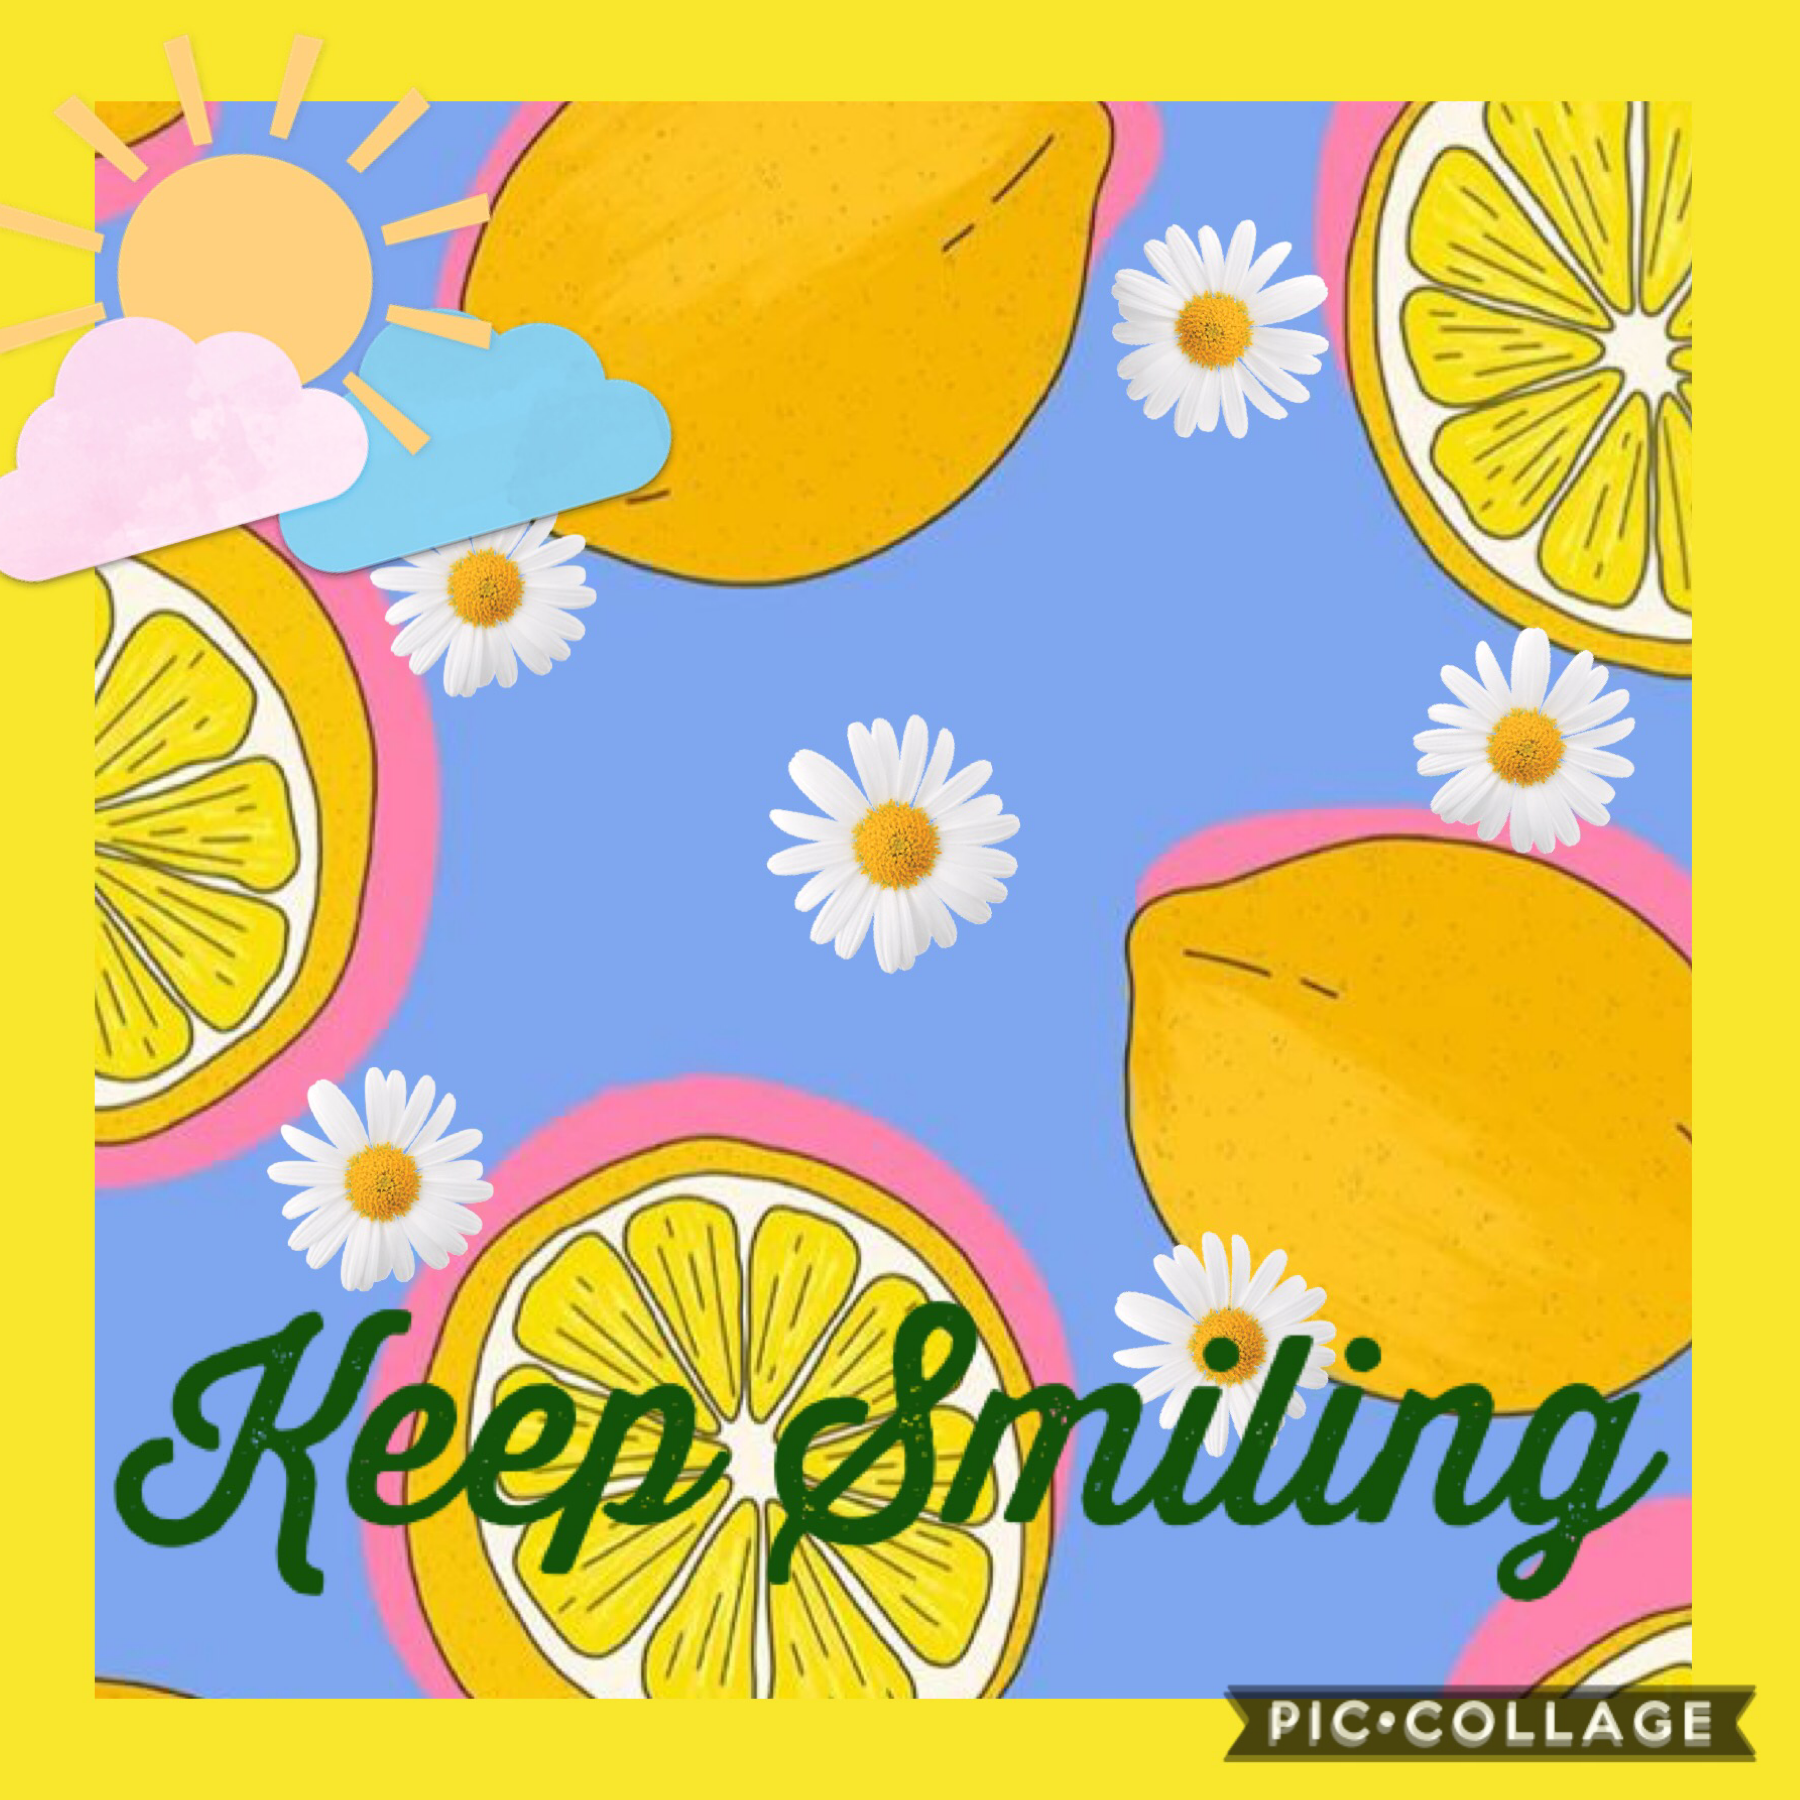 Keep smiling 😝